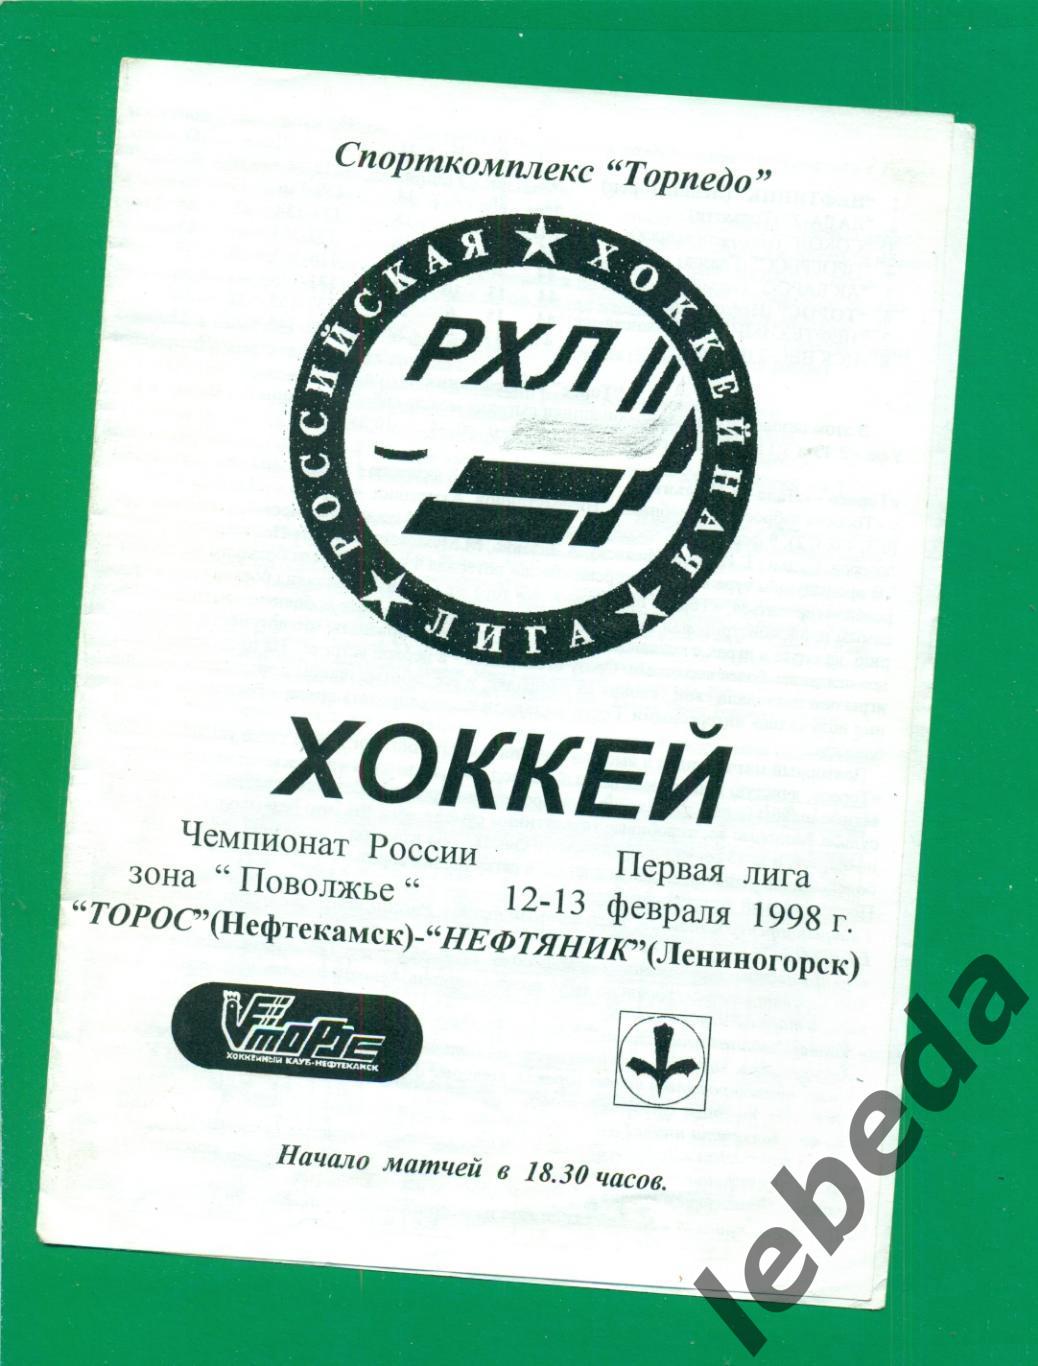 Торос Нефтекамск - Нефтяник Лениногорск - 1997 / 1998 г. ( 12-13.02.98.)